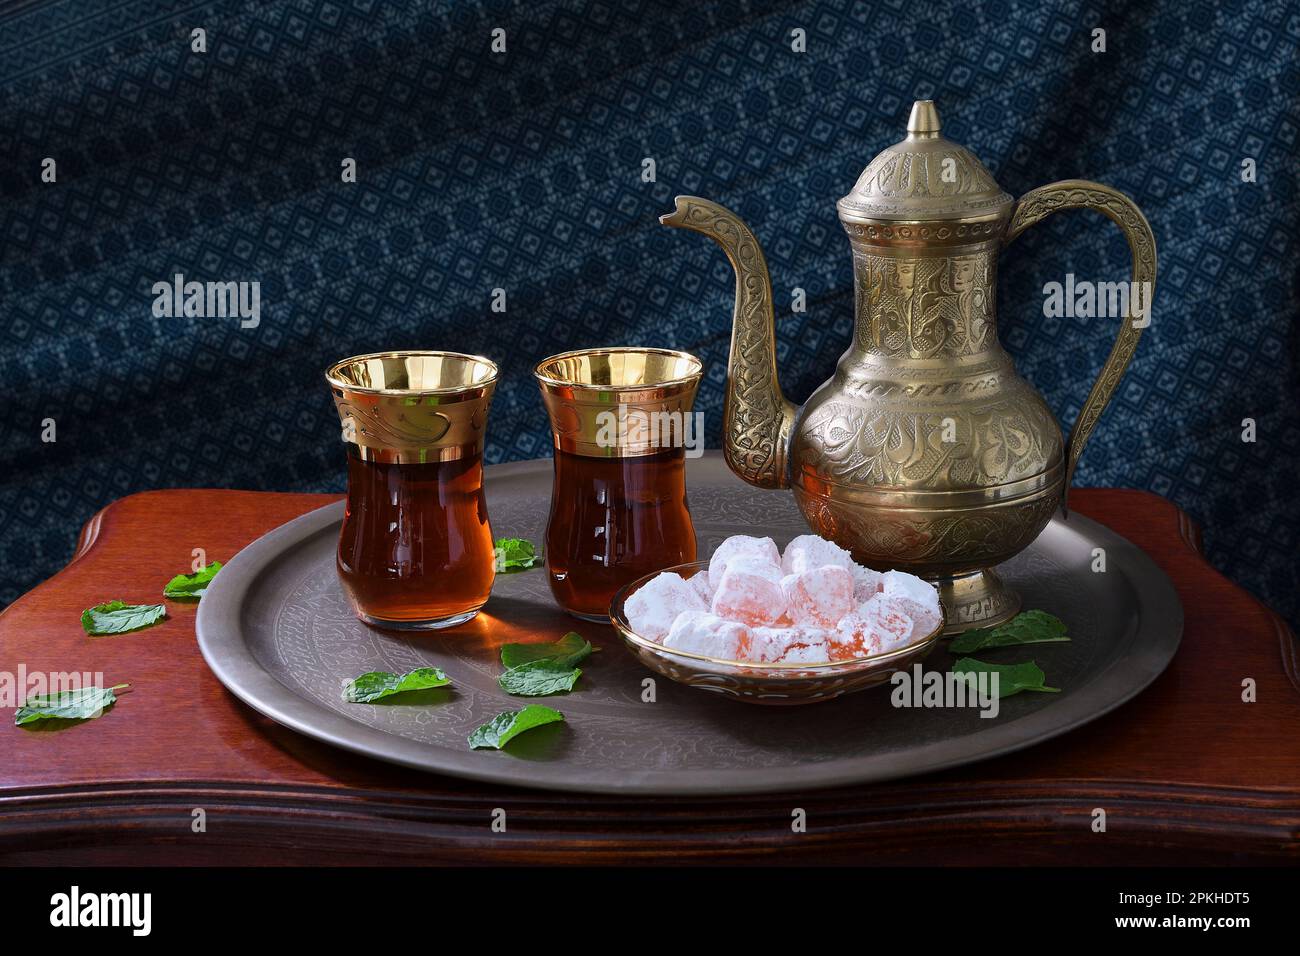 Un classico, celebrativo, ornato teiera turca, due bicchieri e tradizionali delizie turche su un vassoio e tavolo di legno in luce d'atmosfera soffusa Foto Stock